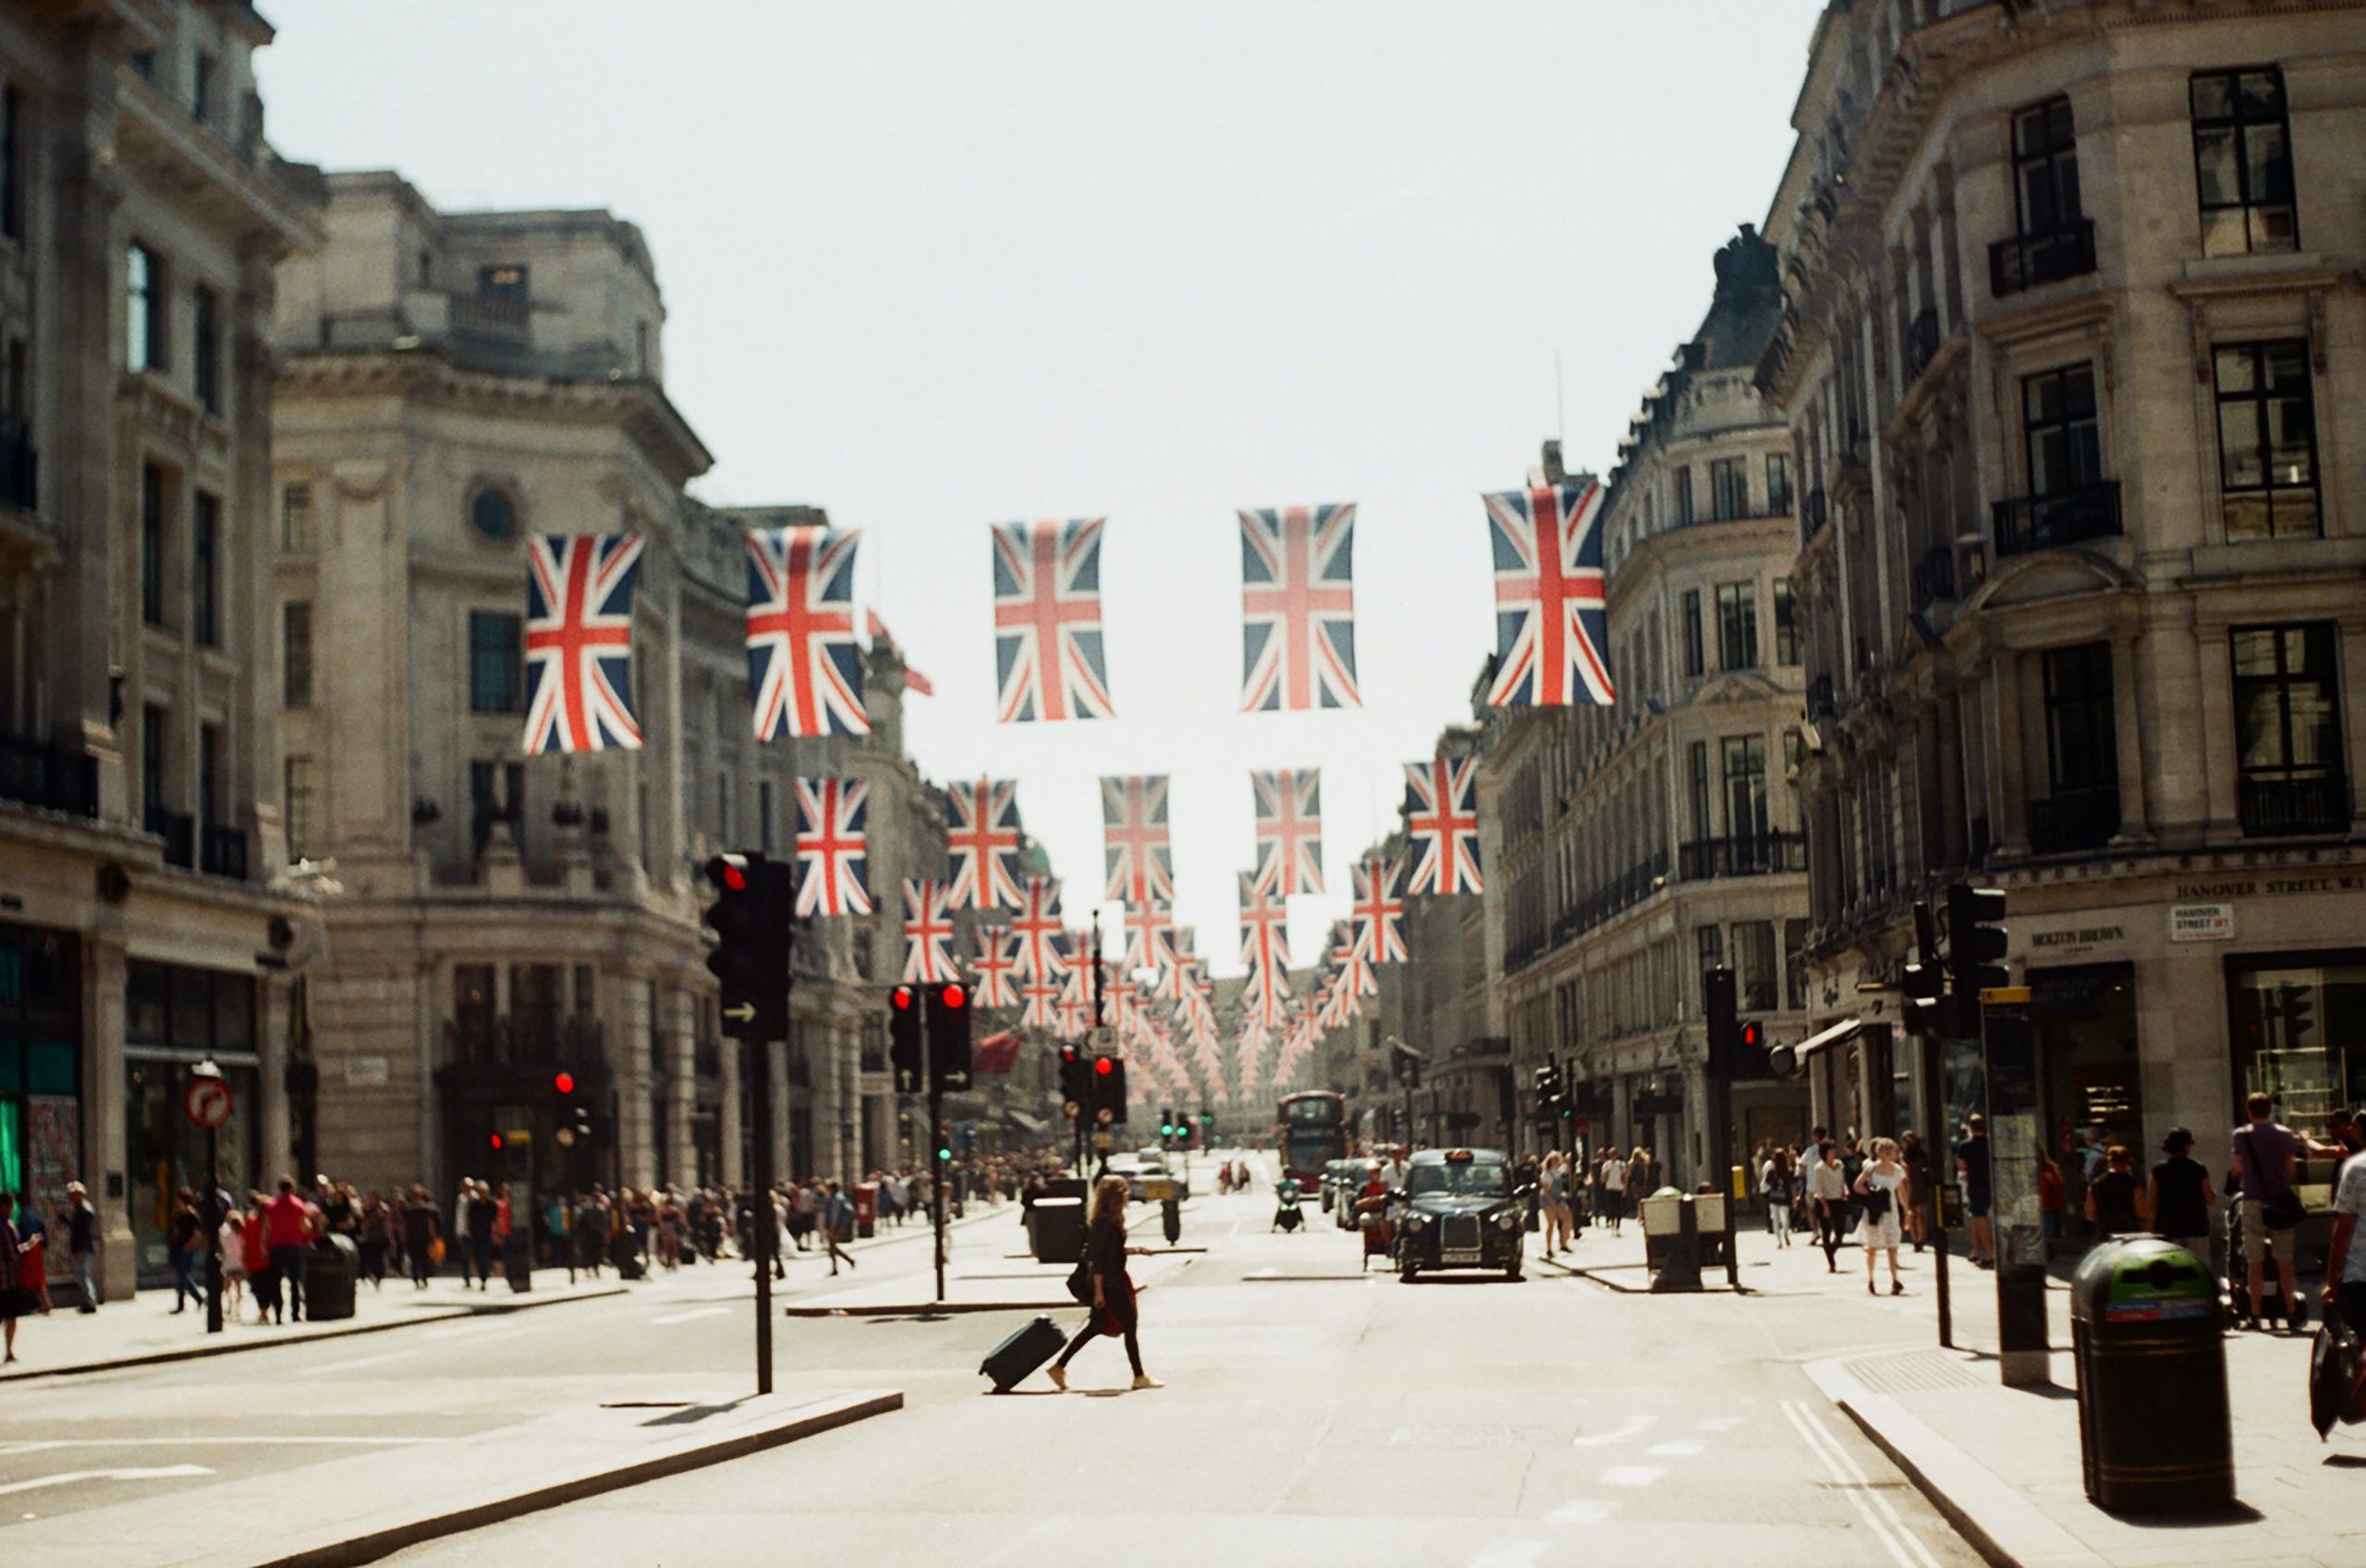 Oxford street in London